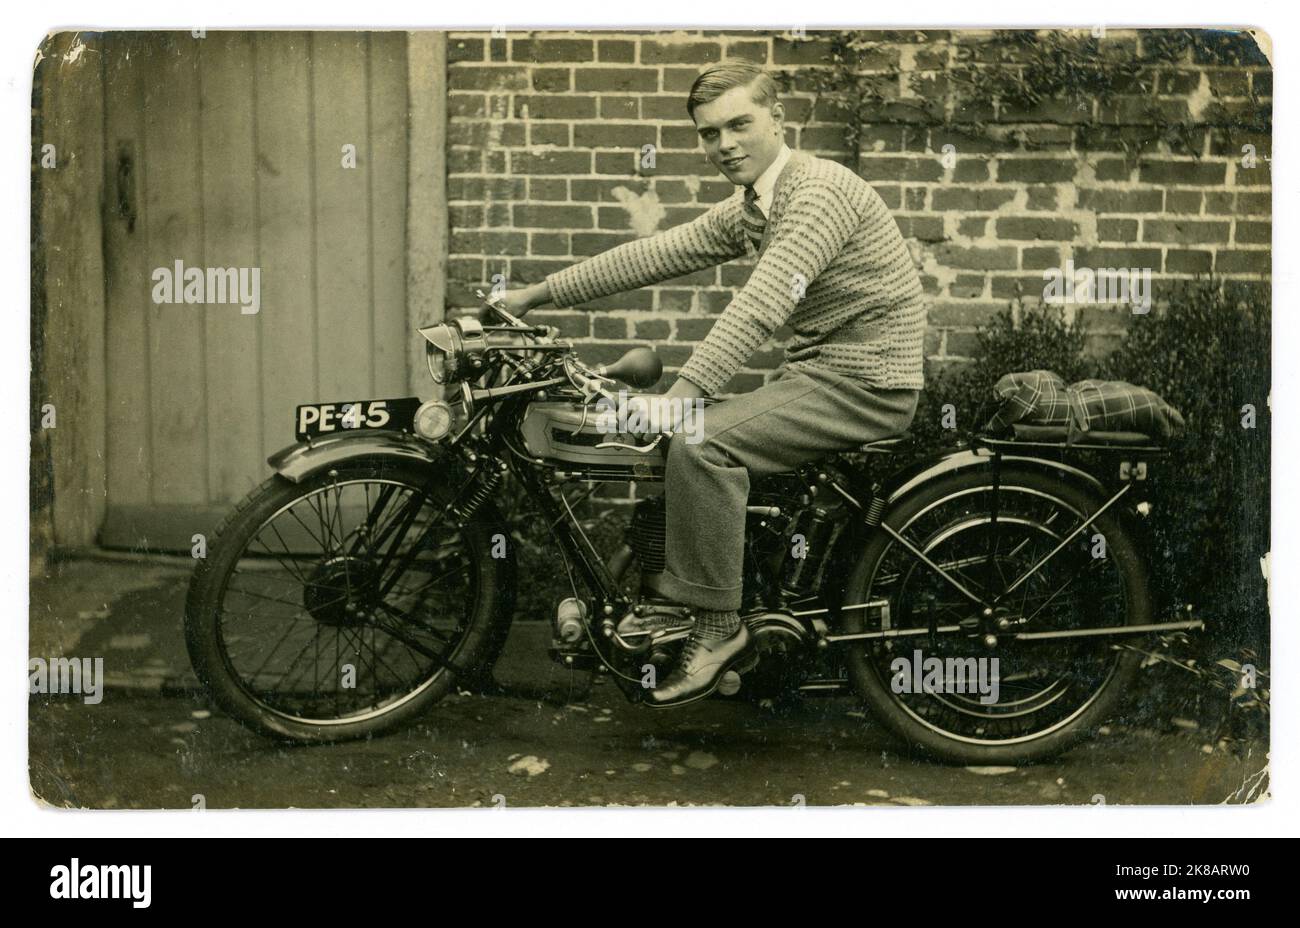 Carte postale originale de l'époque des années 1920 : jeune homme heureux et fier ou jeune adolescent tardif, assis à cheval sur ce qui ressemble à une toute nouvelle moto Triumph, inscription à Guildford, Surrey, Angleterre, Royaume-Uni Banque D'Images